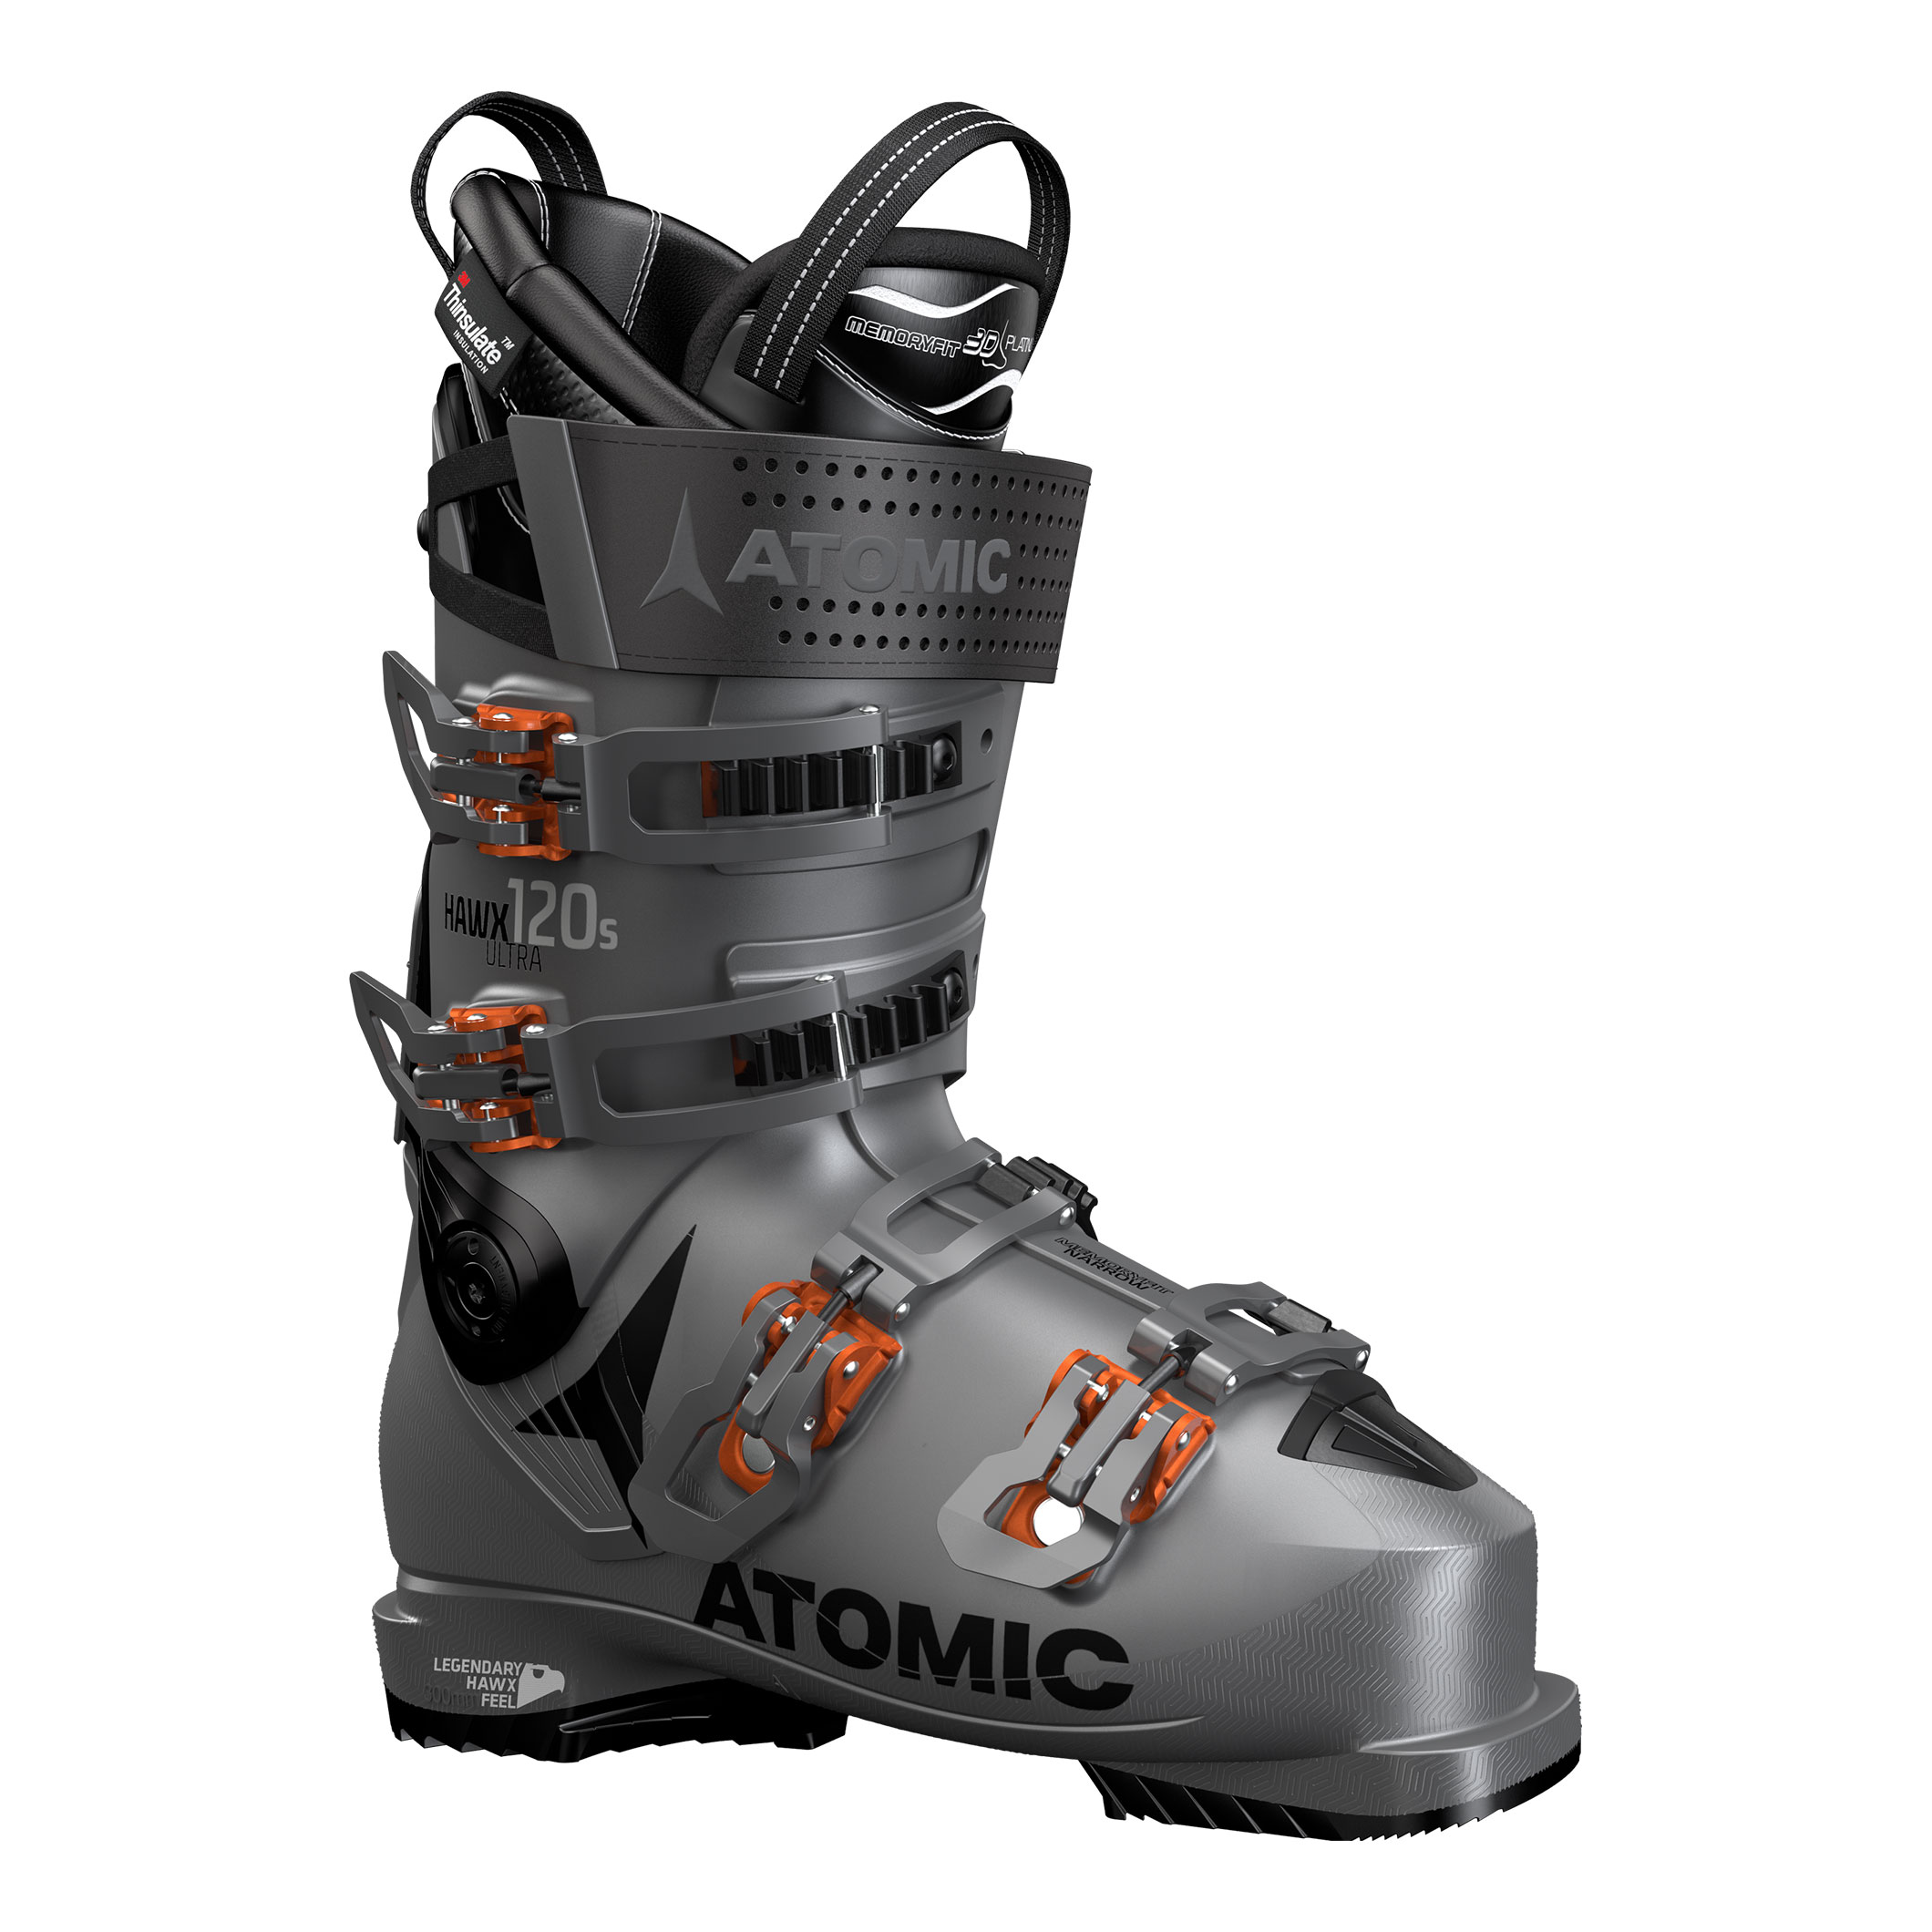 Ski Boots -  atomic Hawx Ultra 120 S